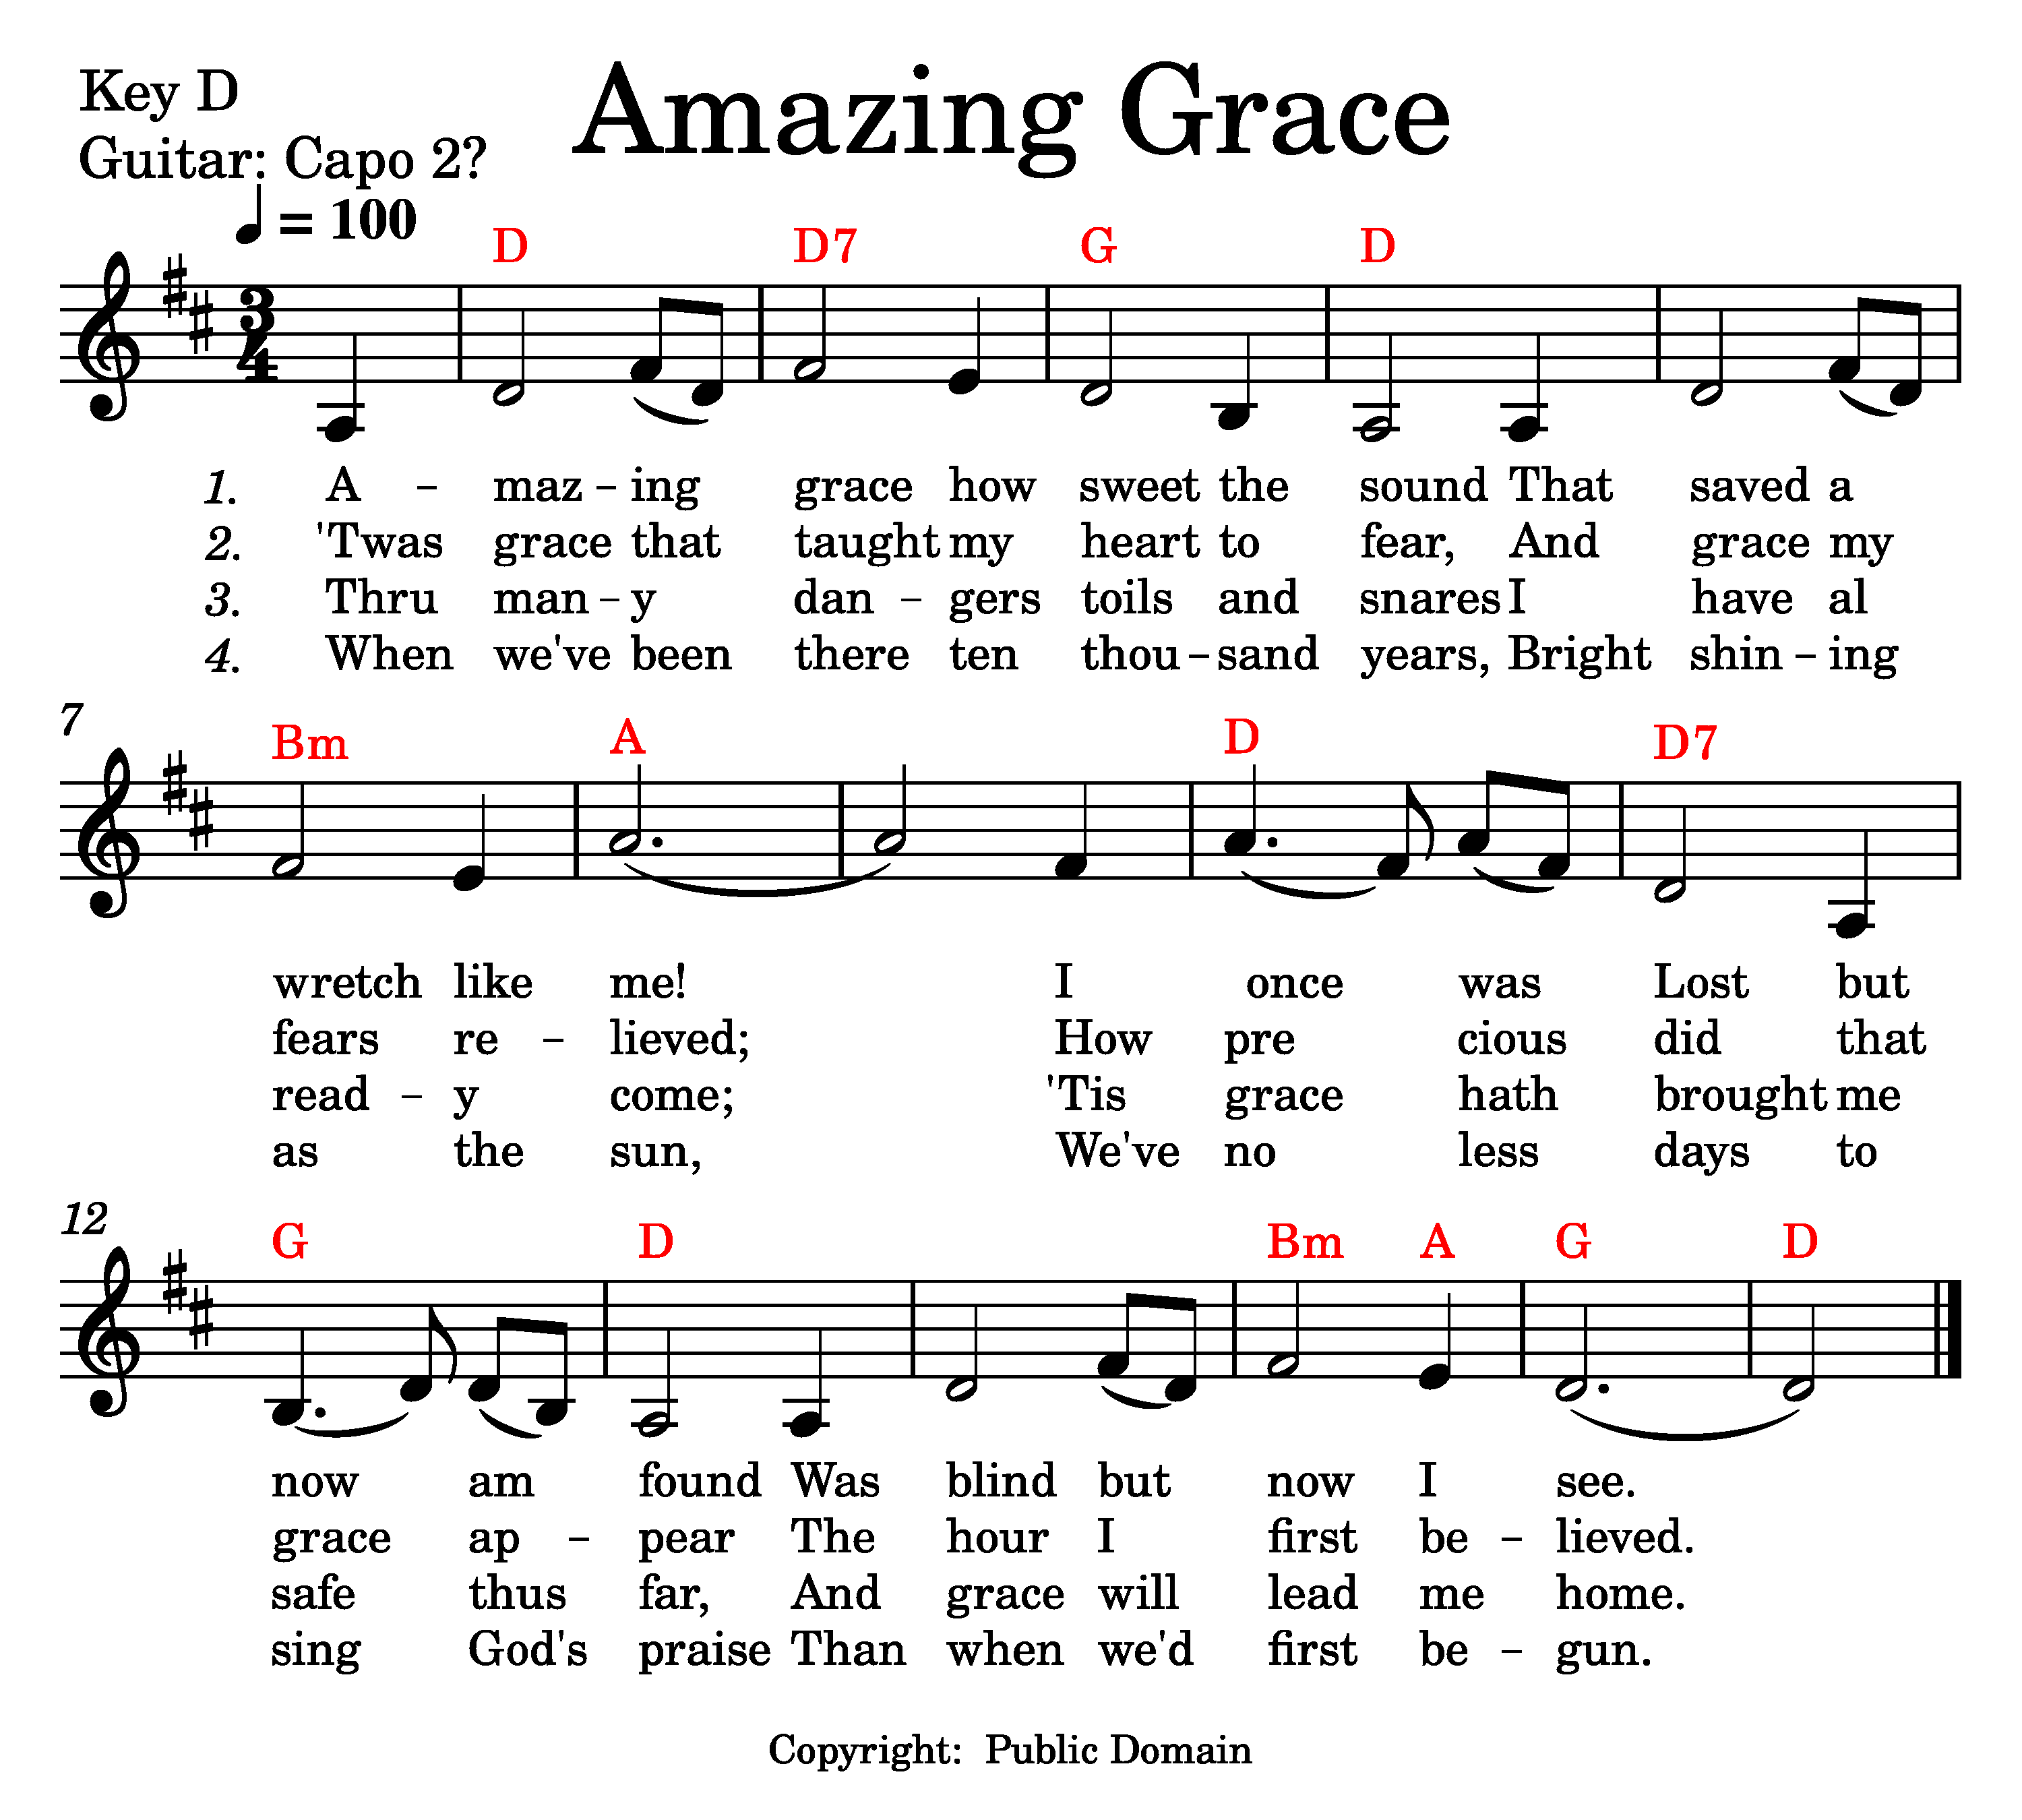 Amazing Grace music and lyrics.